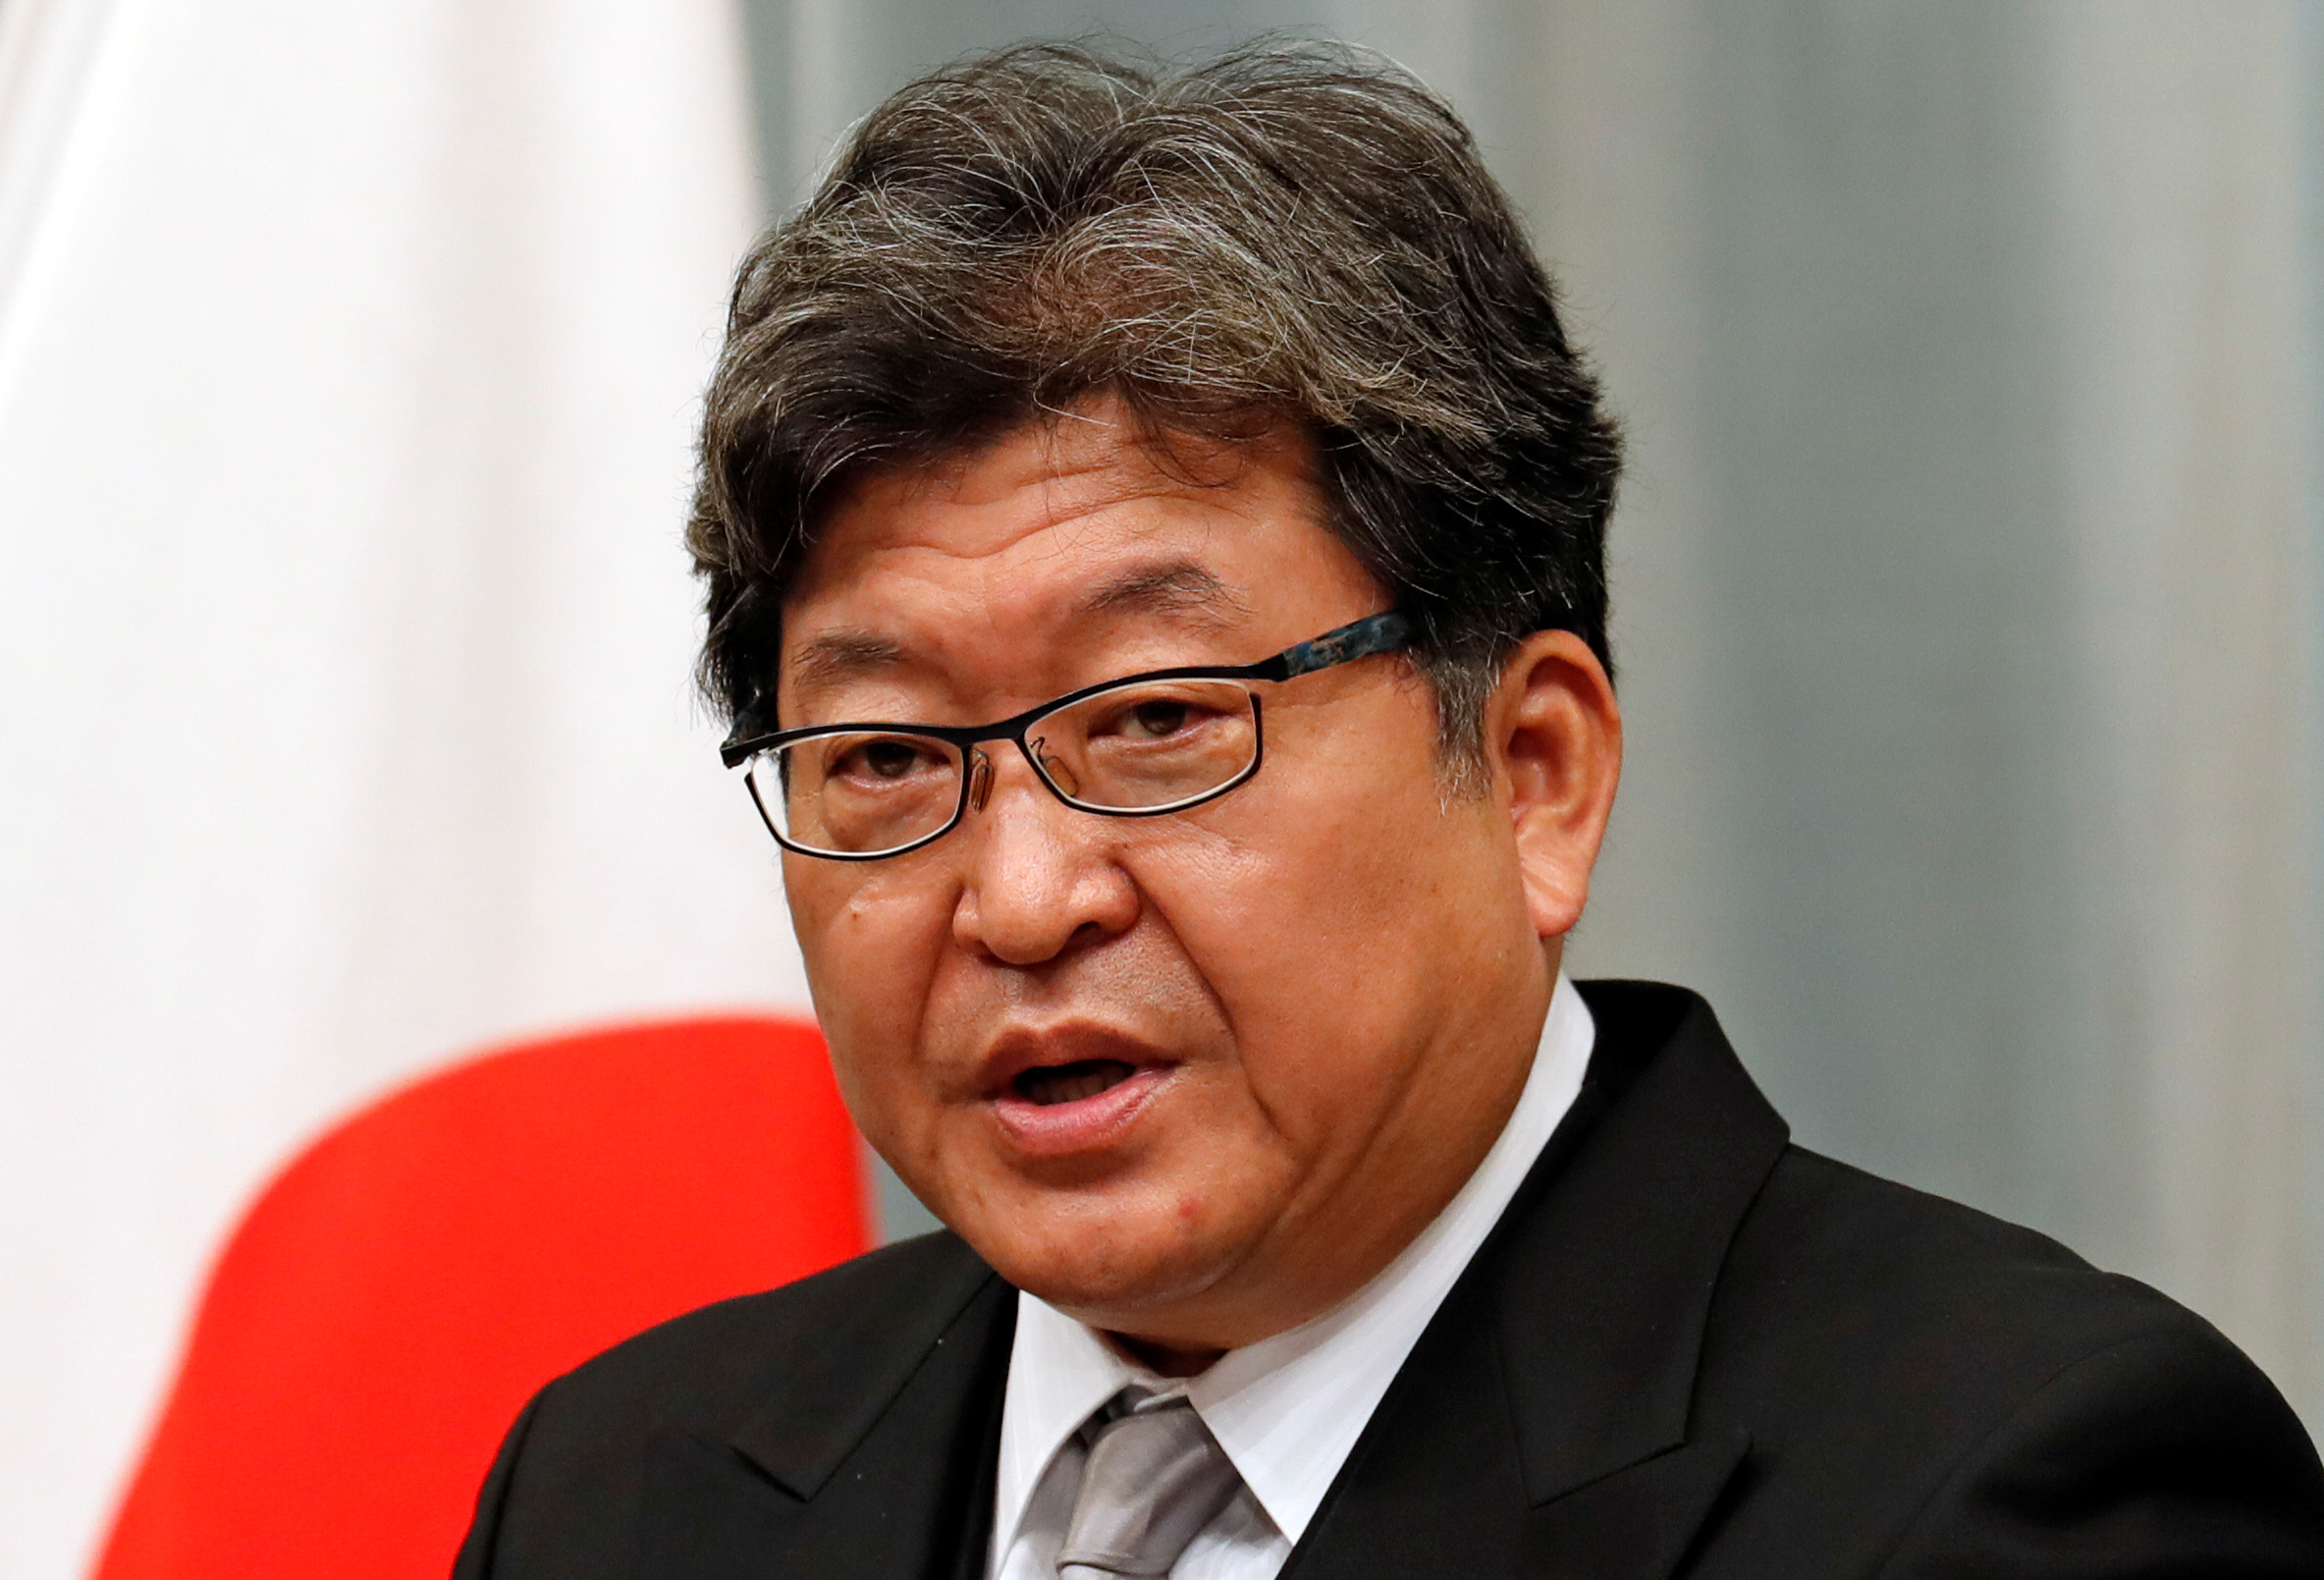 Koichi Hagiuda speaks at a news conference in Tokyo